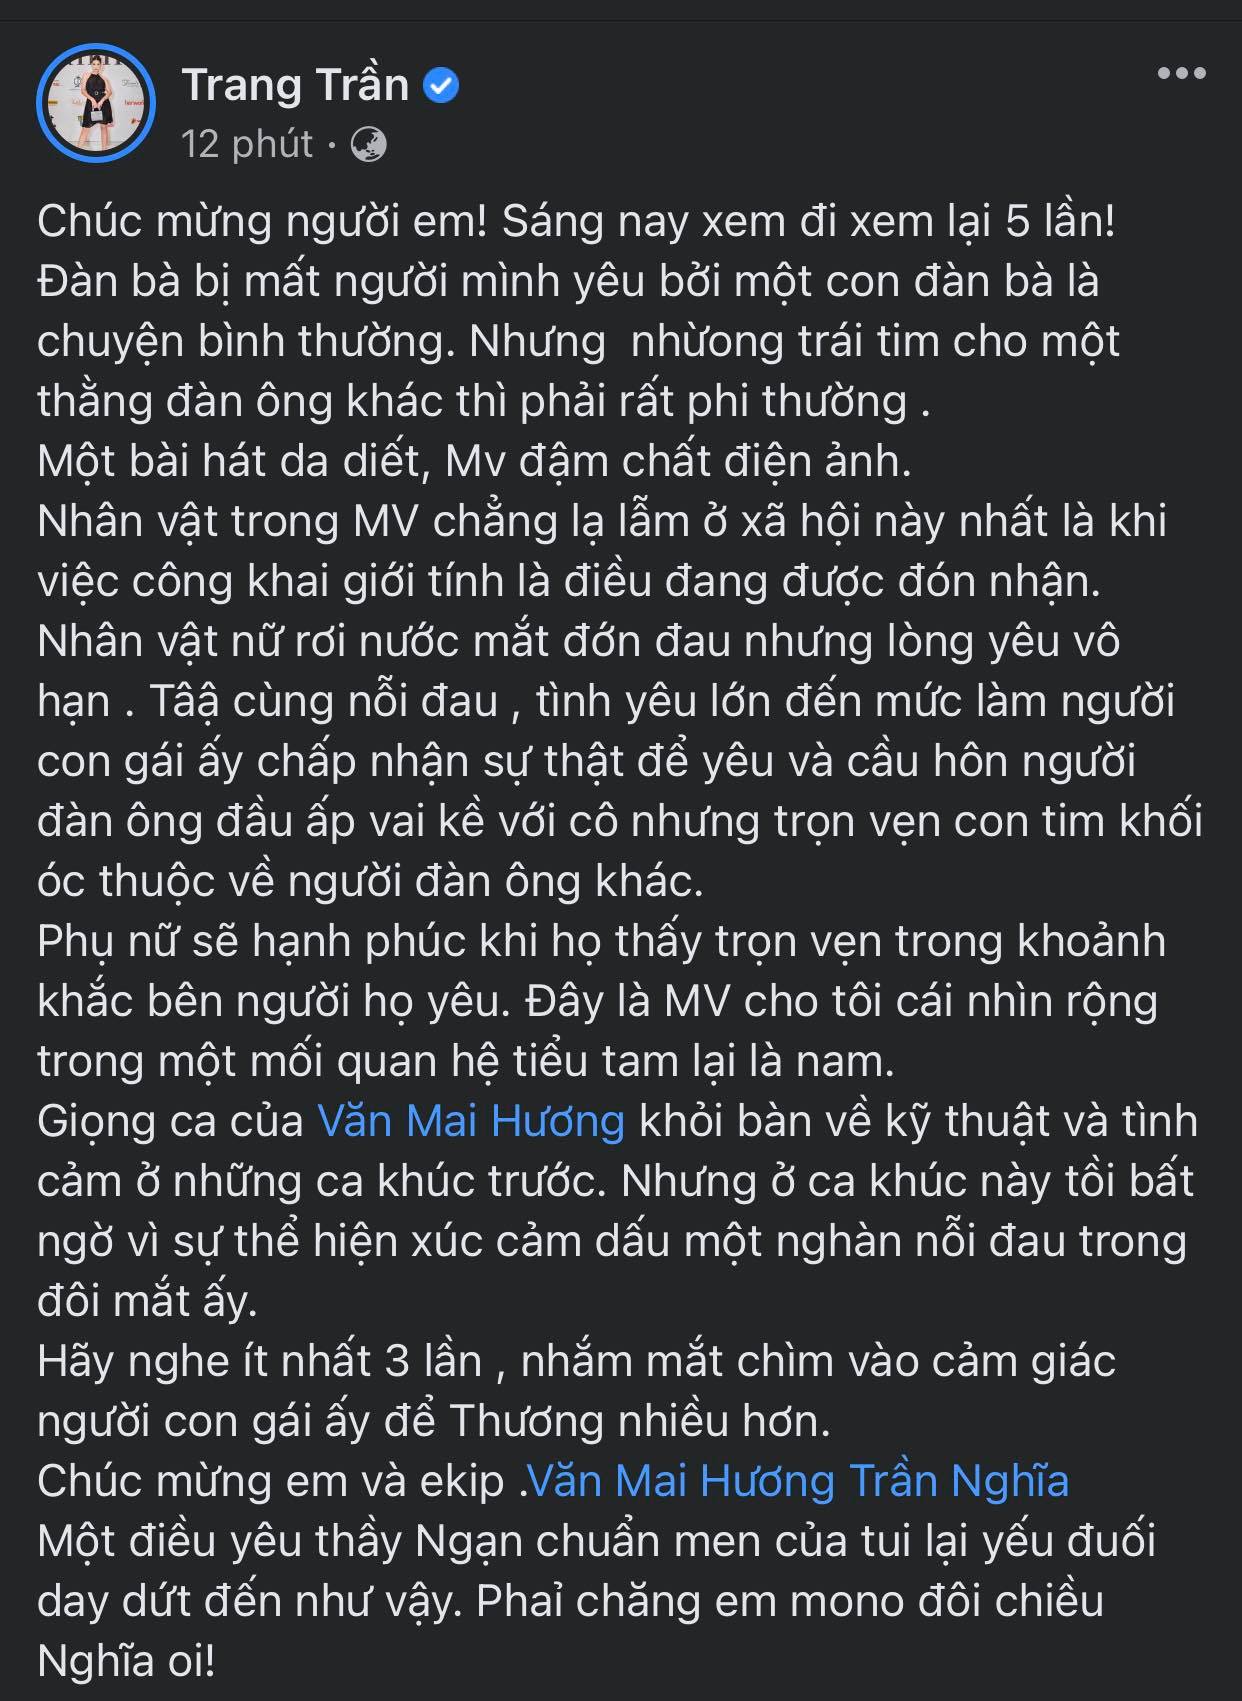 Xuat-hien-doan-hoi-thoai-van-mai-huong-than-tho-voi-trang-tran-viec-bi-cuop-chong-gay-xon-xao